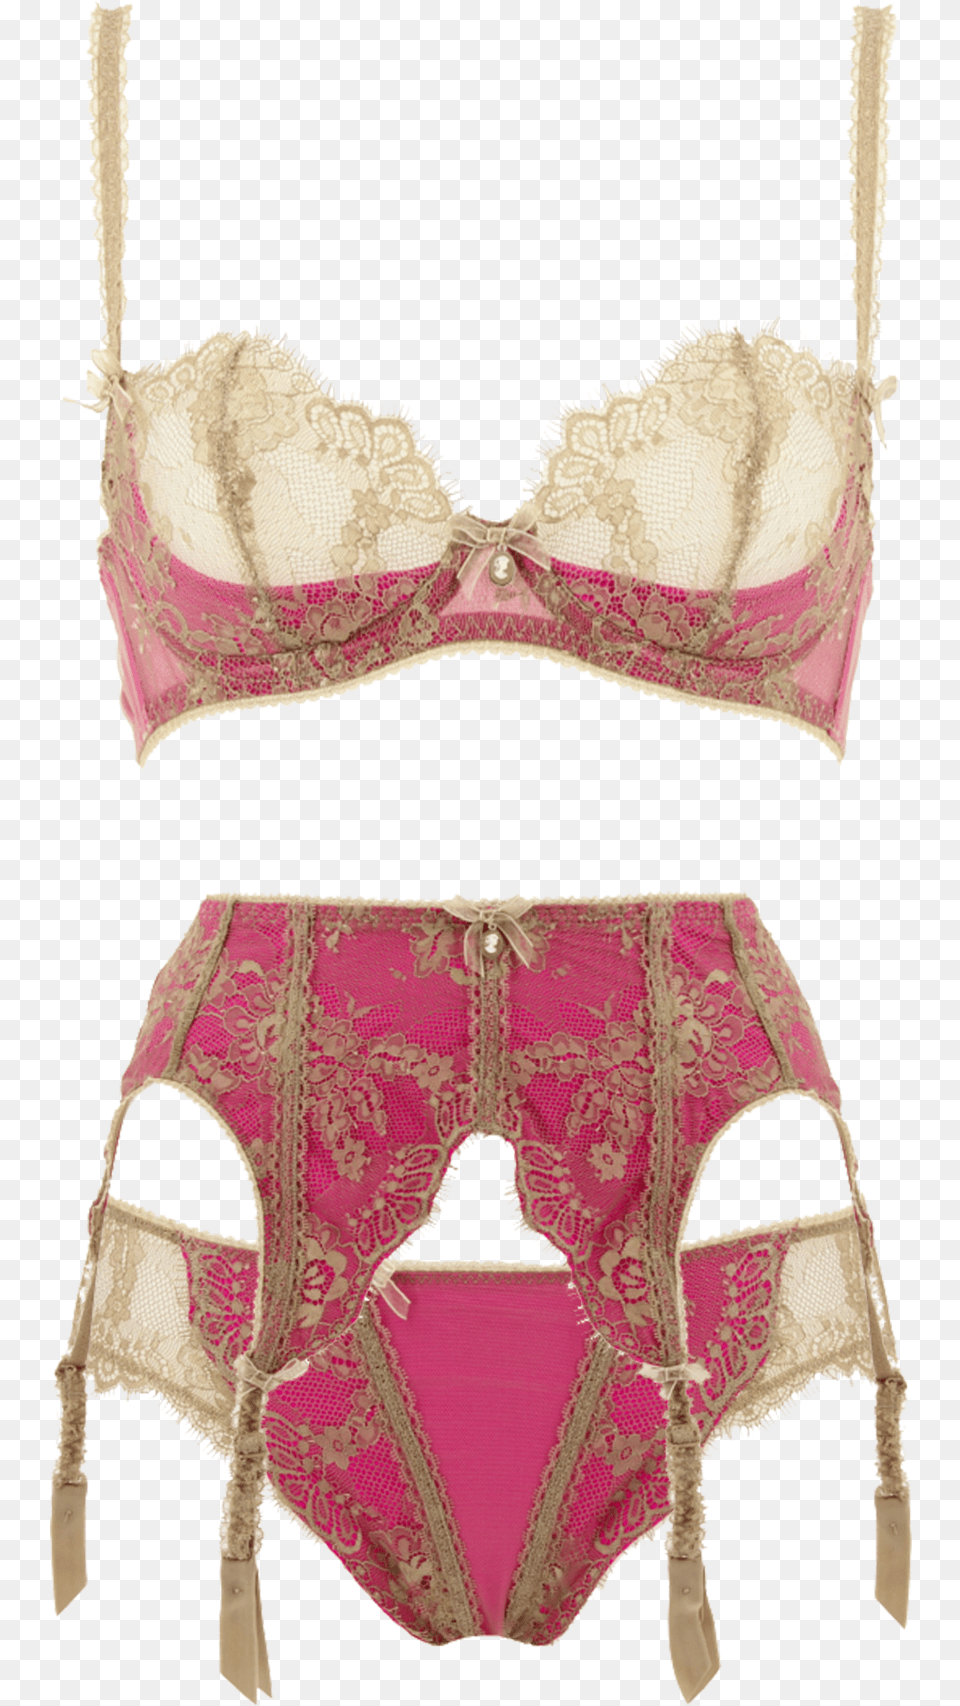 Savoir Faire By Dita Von Teese 32 36 A D 32 Dita Von Teese Red Lingerie Set, Bra, Clothing, Underwear, Wedding Png Image